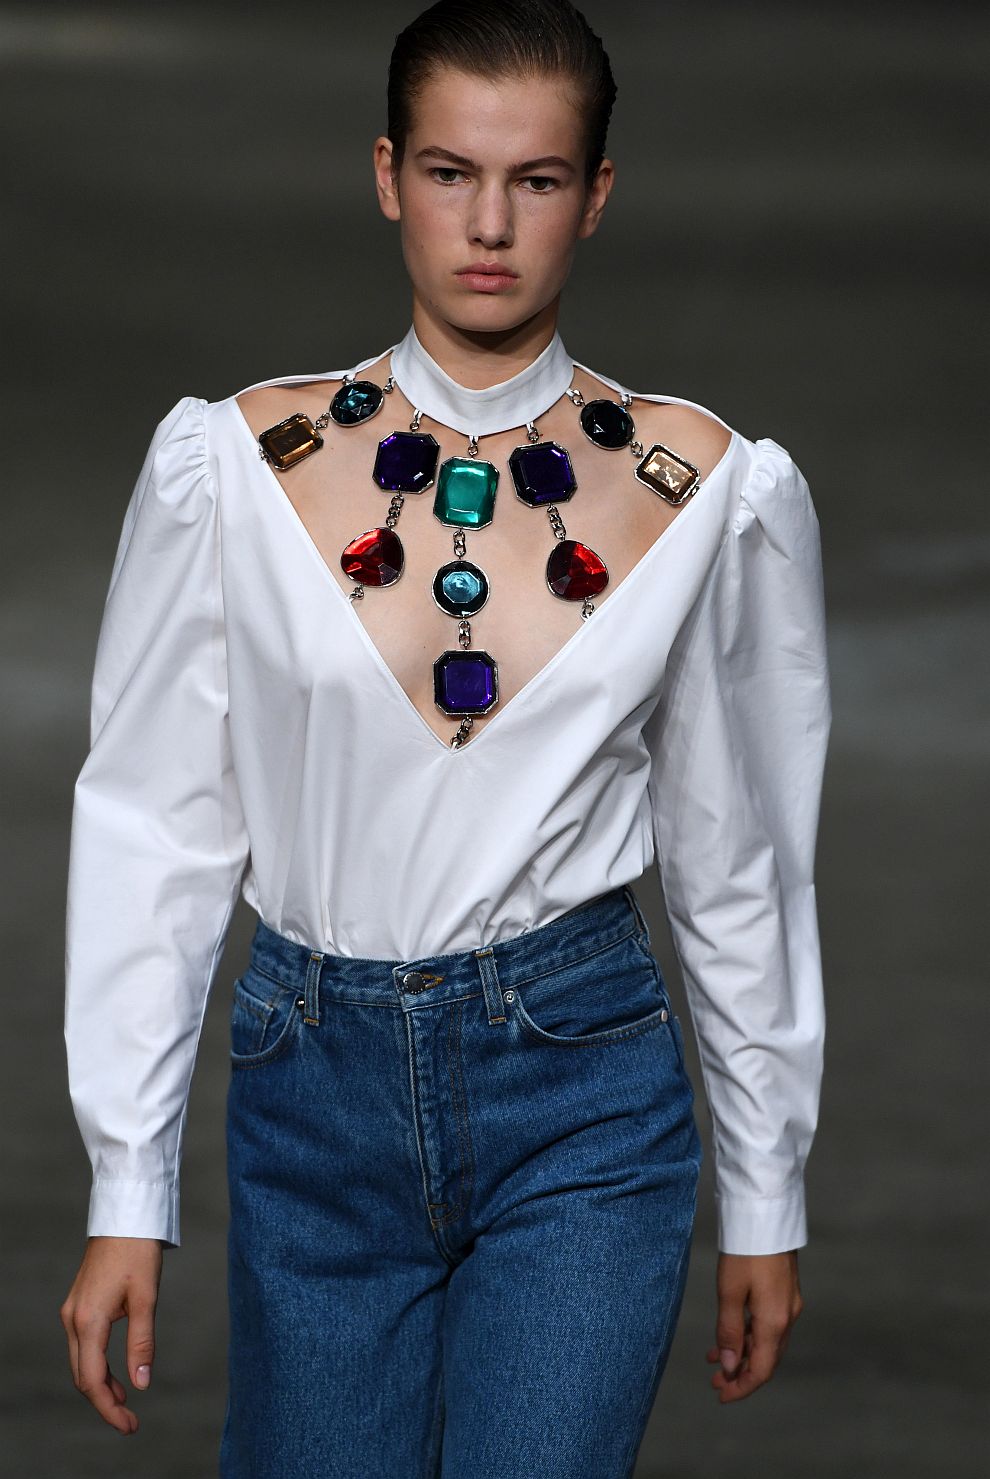 Модел от колекцията на Кристофър Кейн, представена в рамките на Лондонската седмица на модата